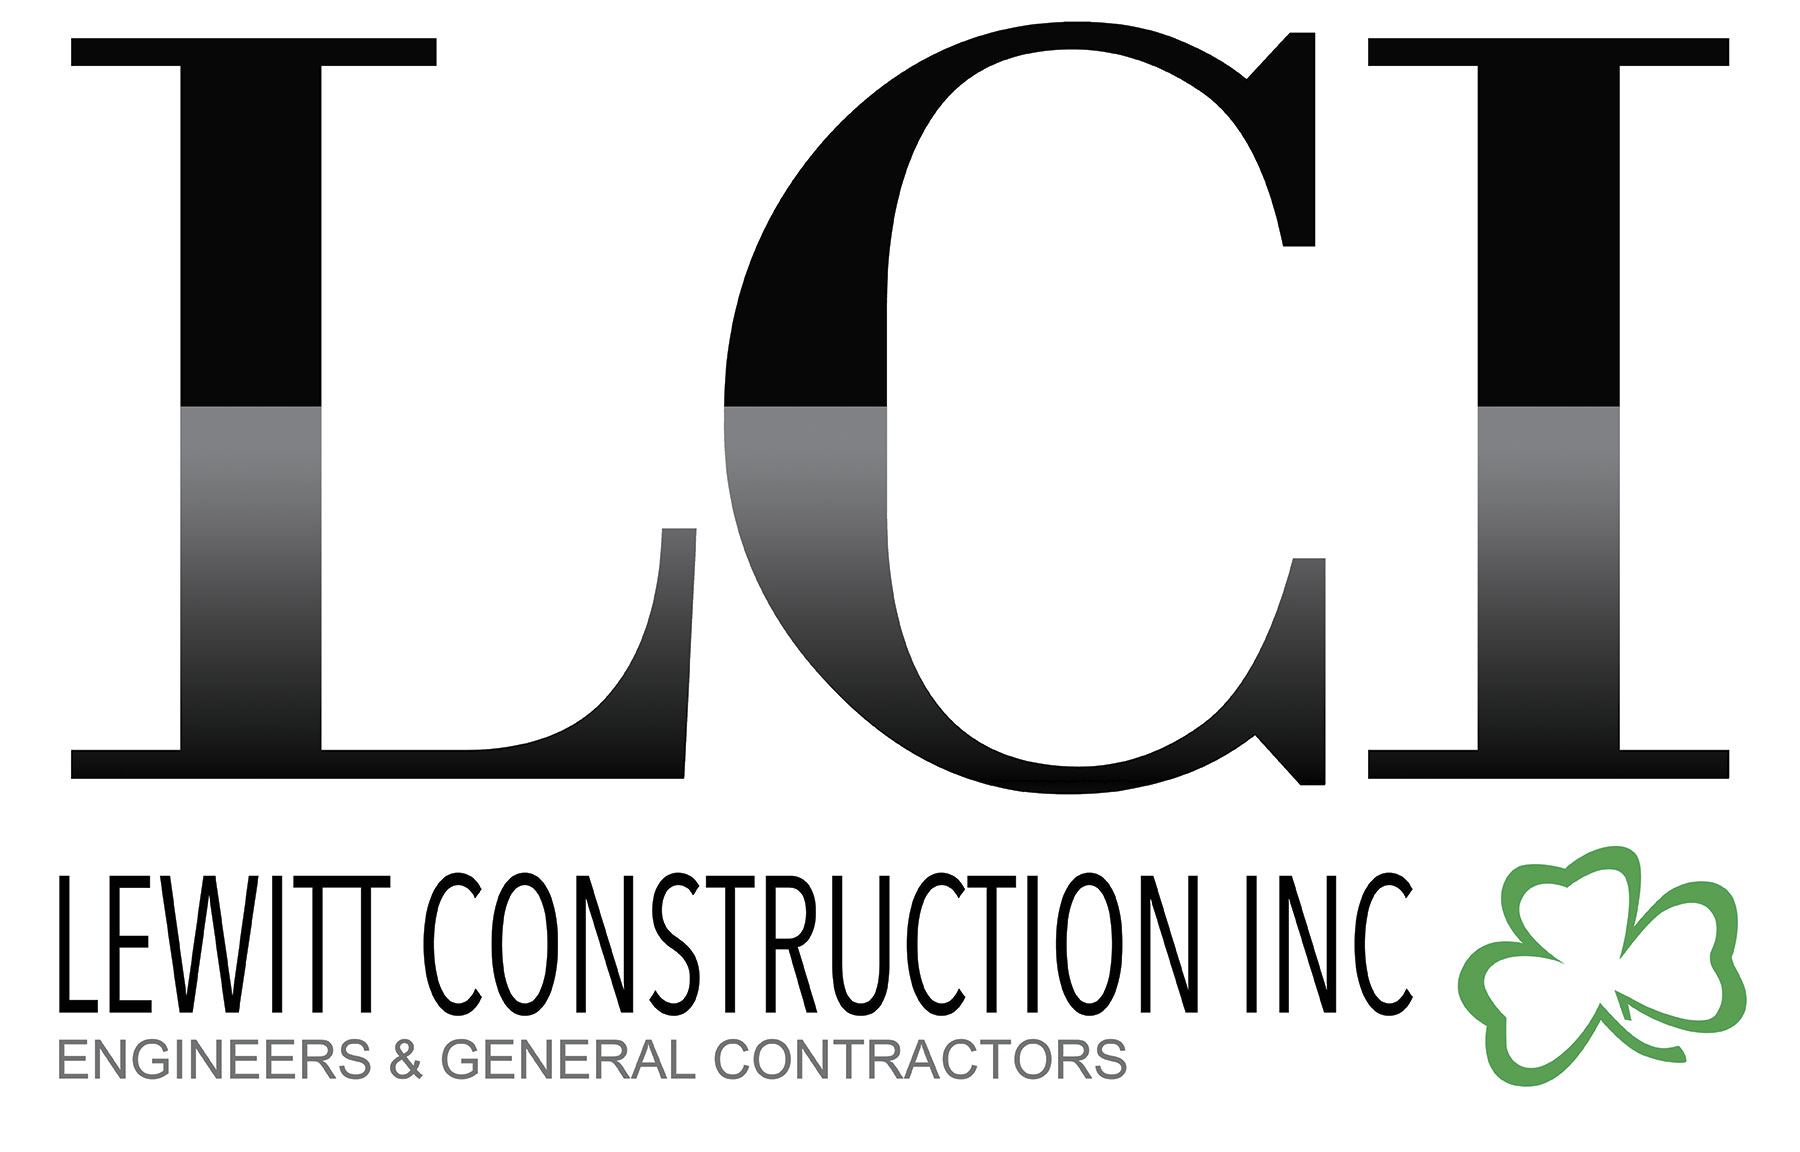 Lewitt Construction